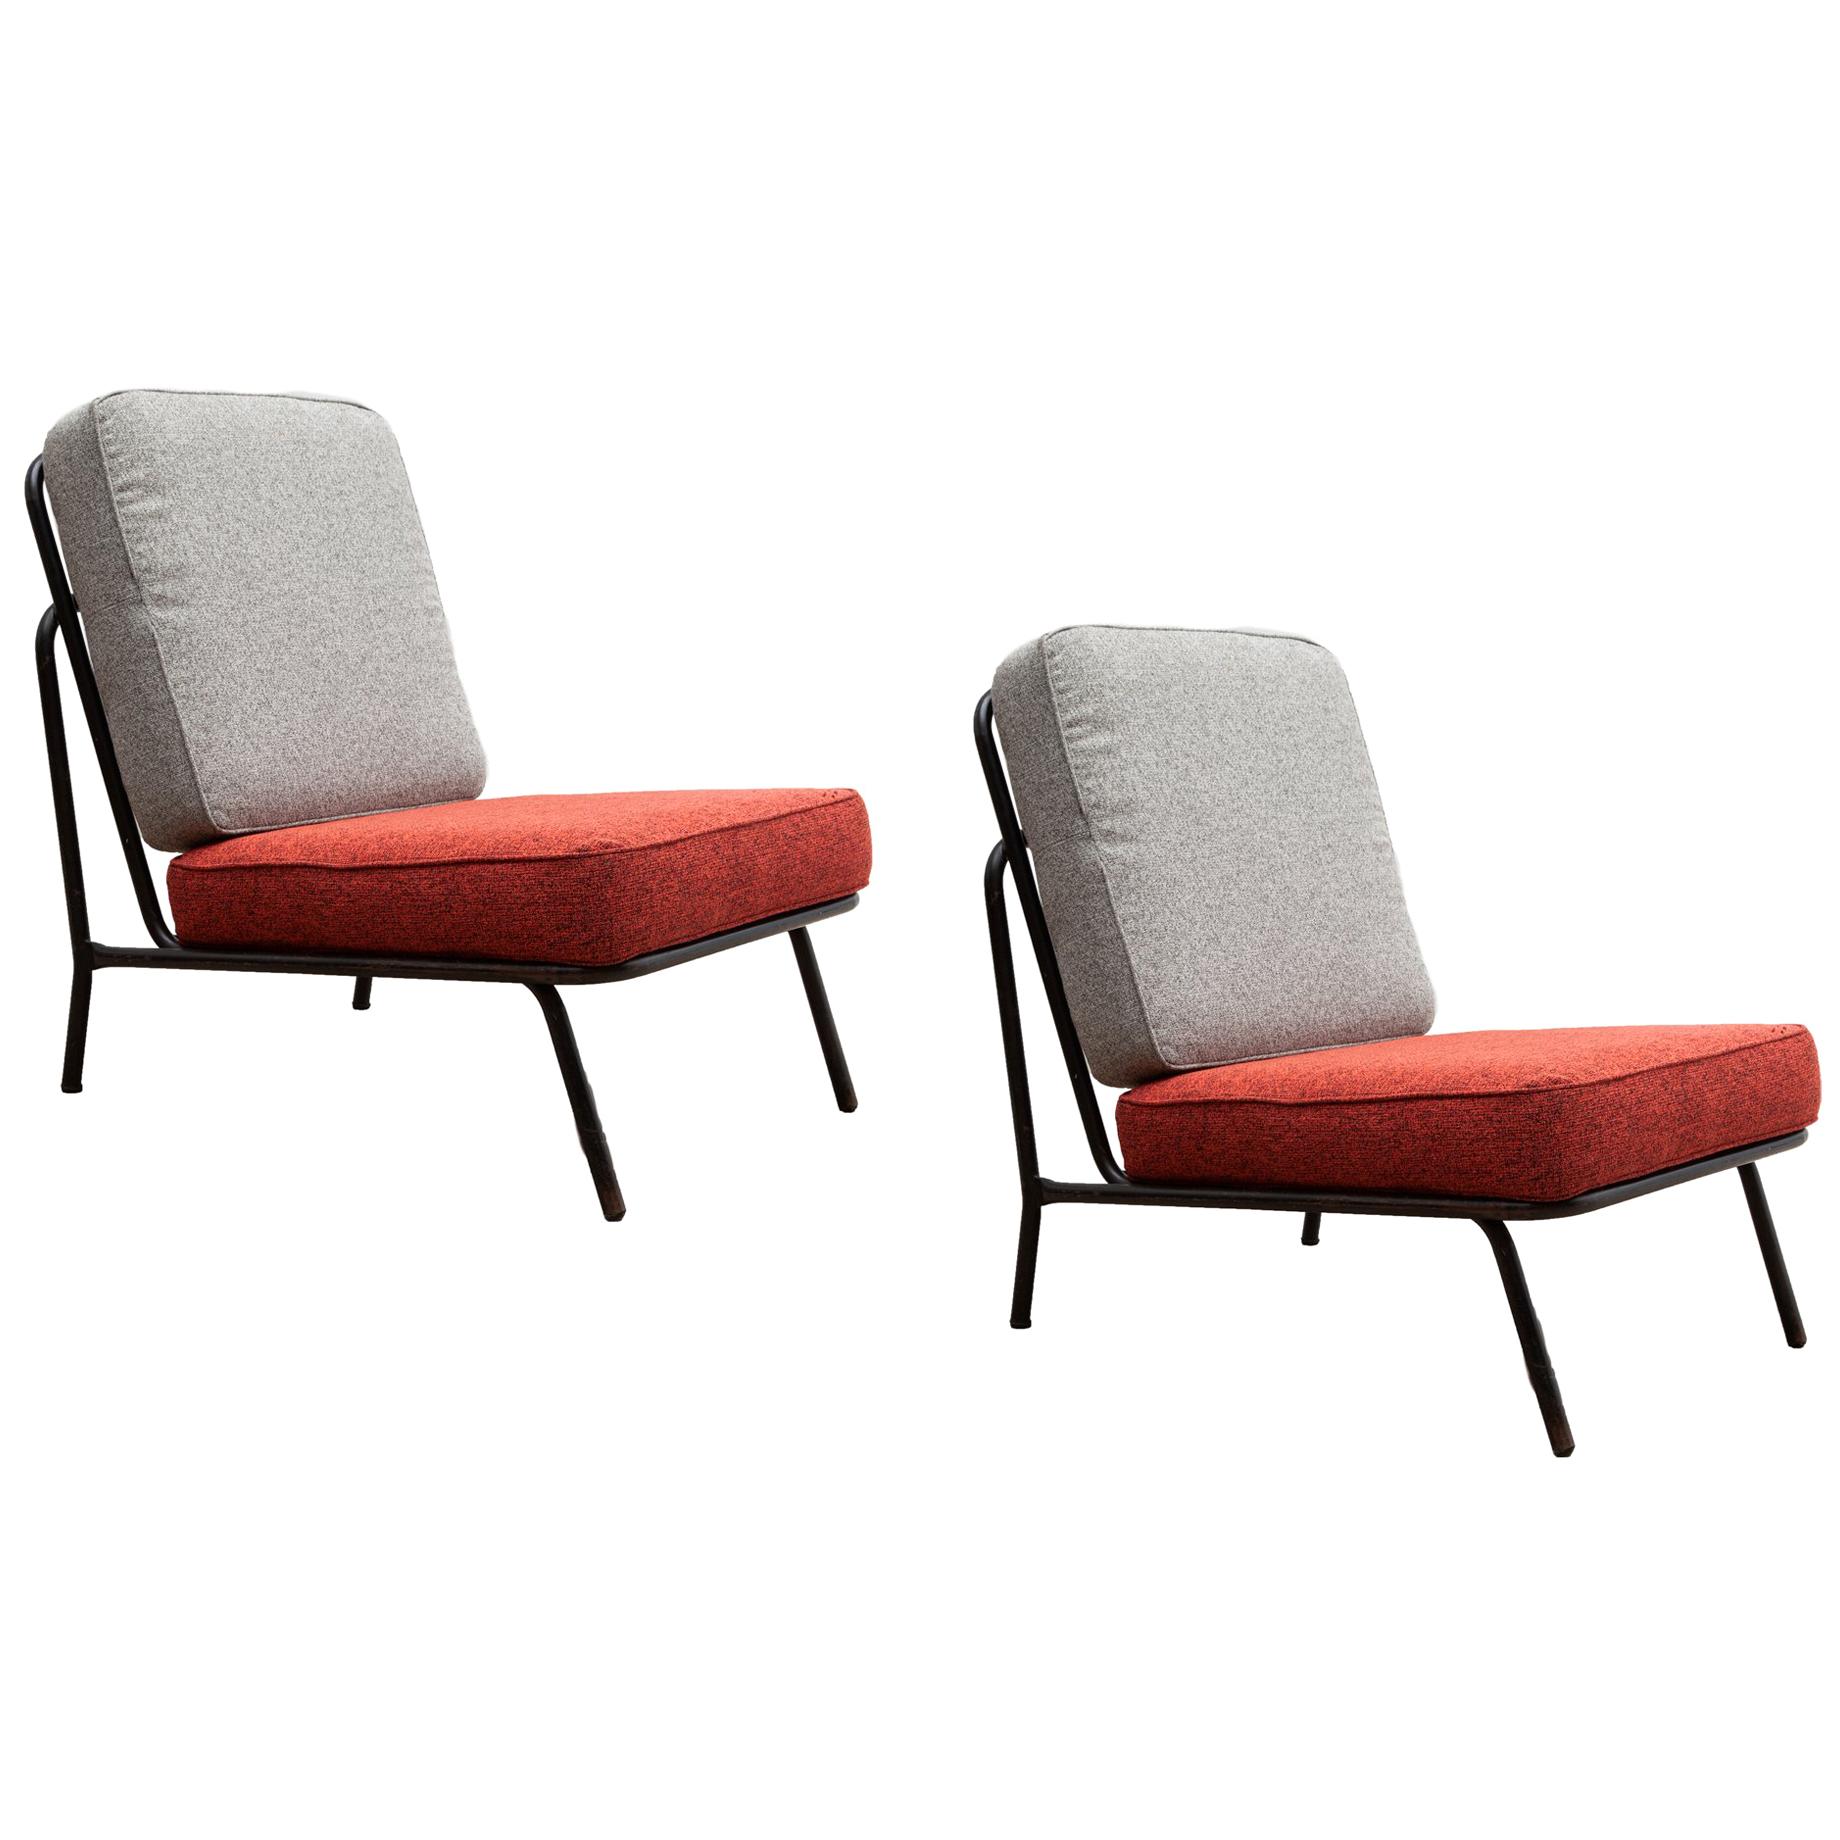 Midcentury Patio Chairs, Belgium Design, 1960s